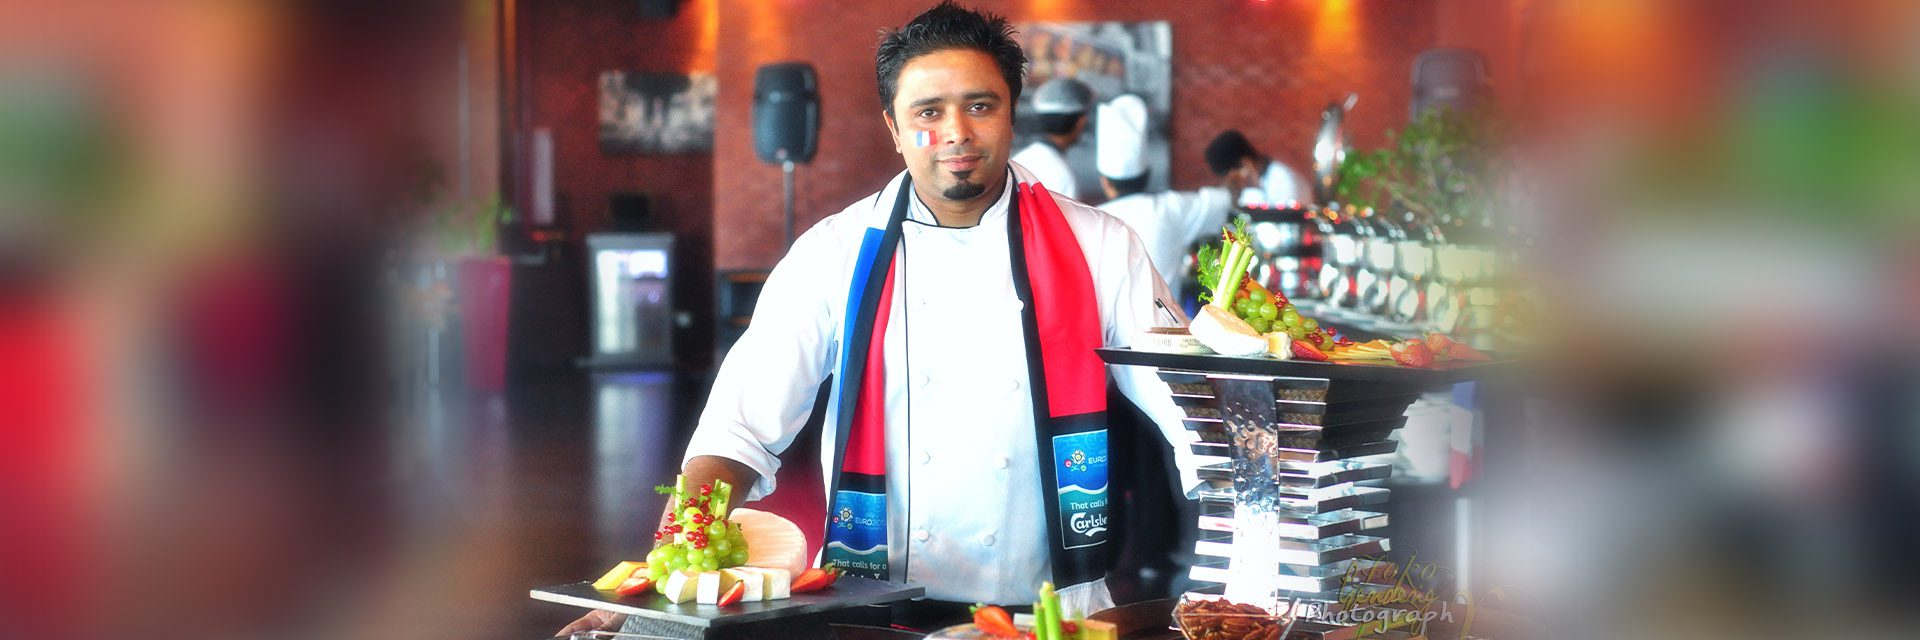 Чину Чандран | индийский шеф-повар | Глобальный индийский